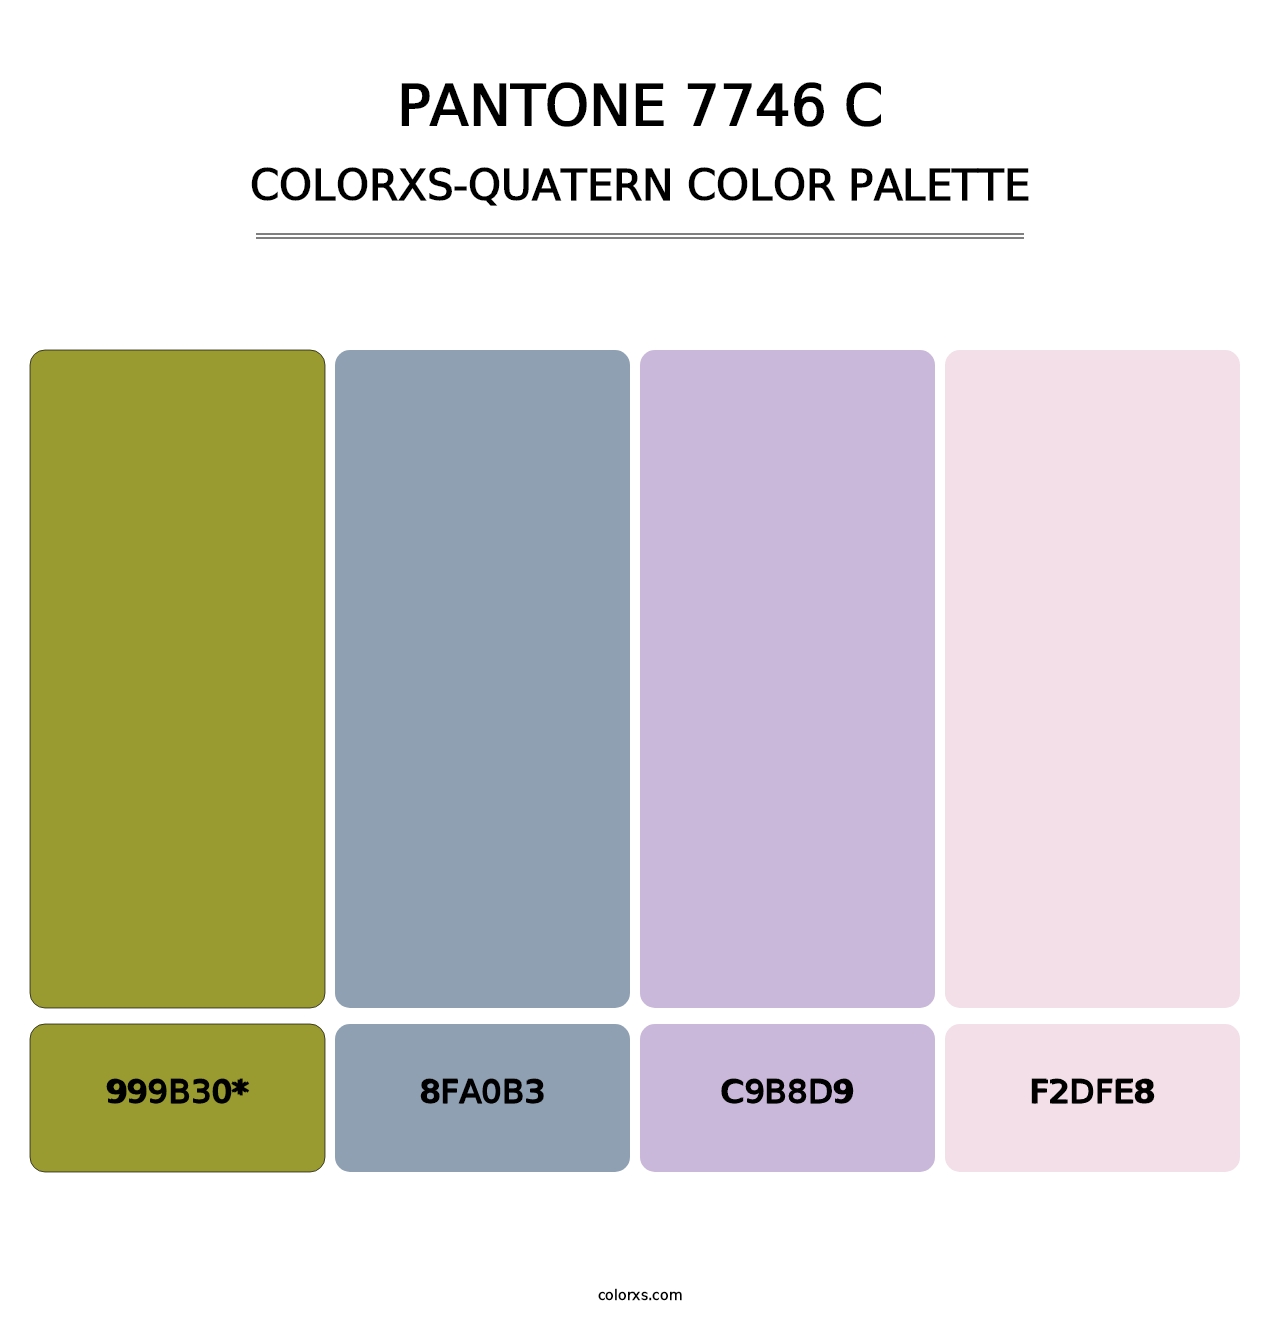 PANTONE 7746 C - Colorxs Quatern Palette